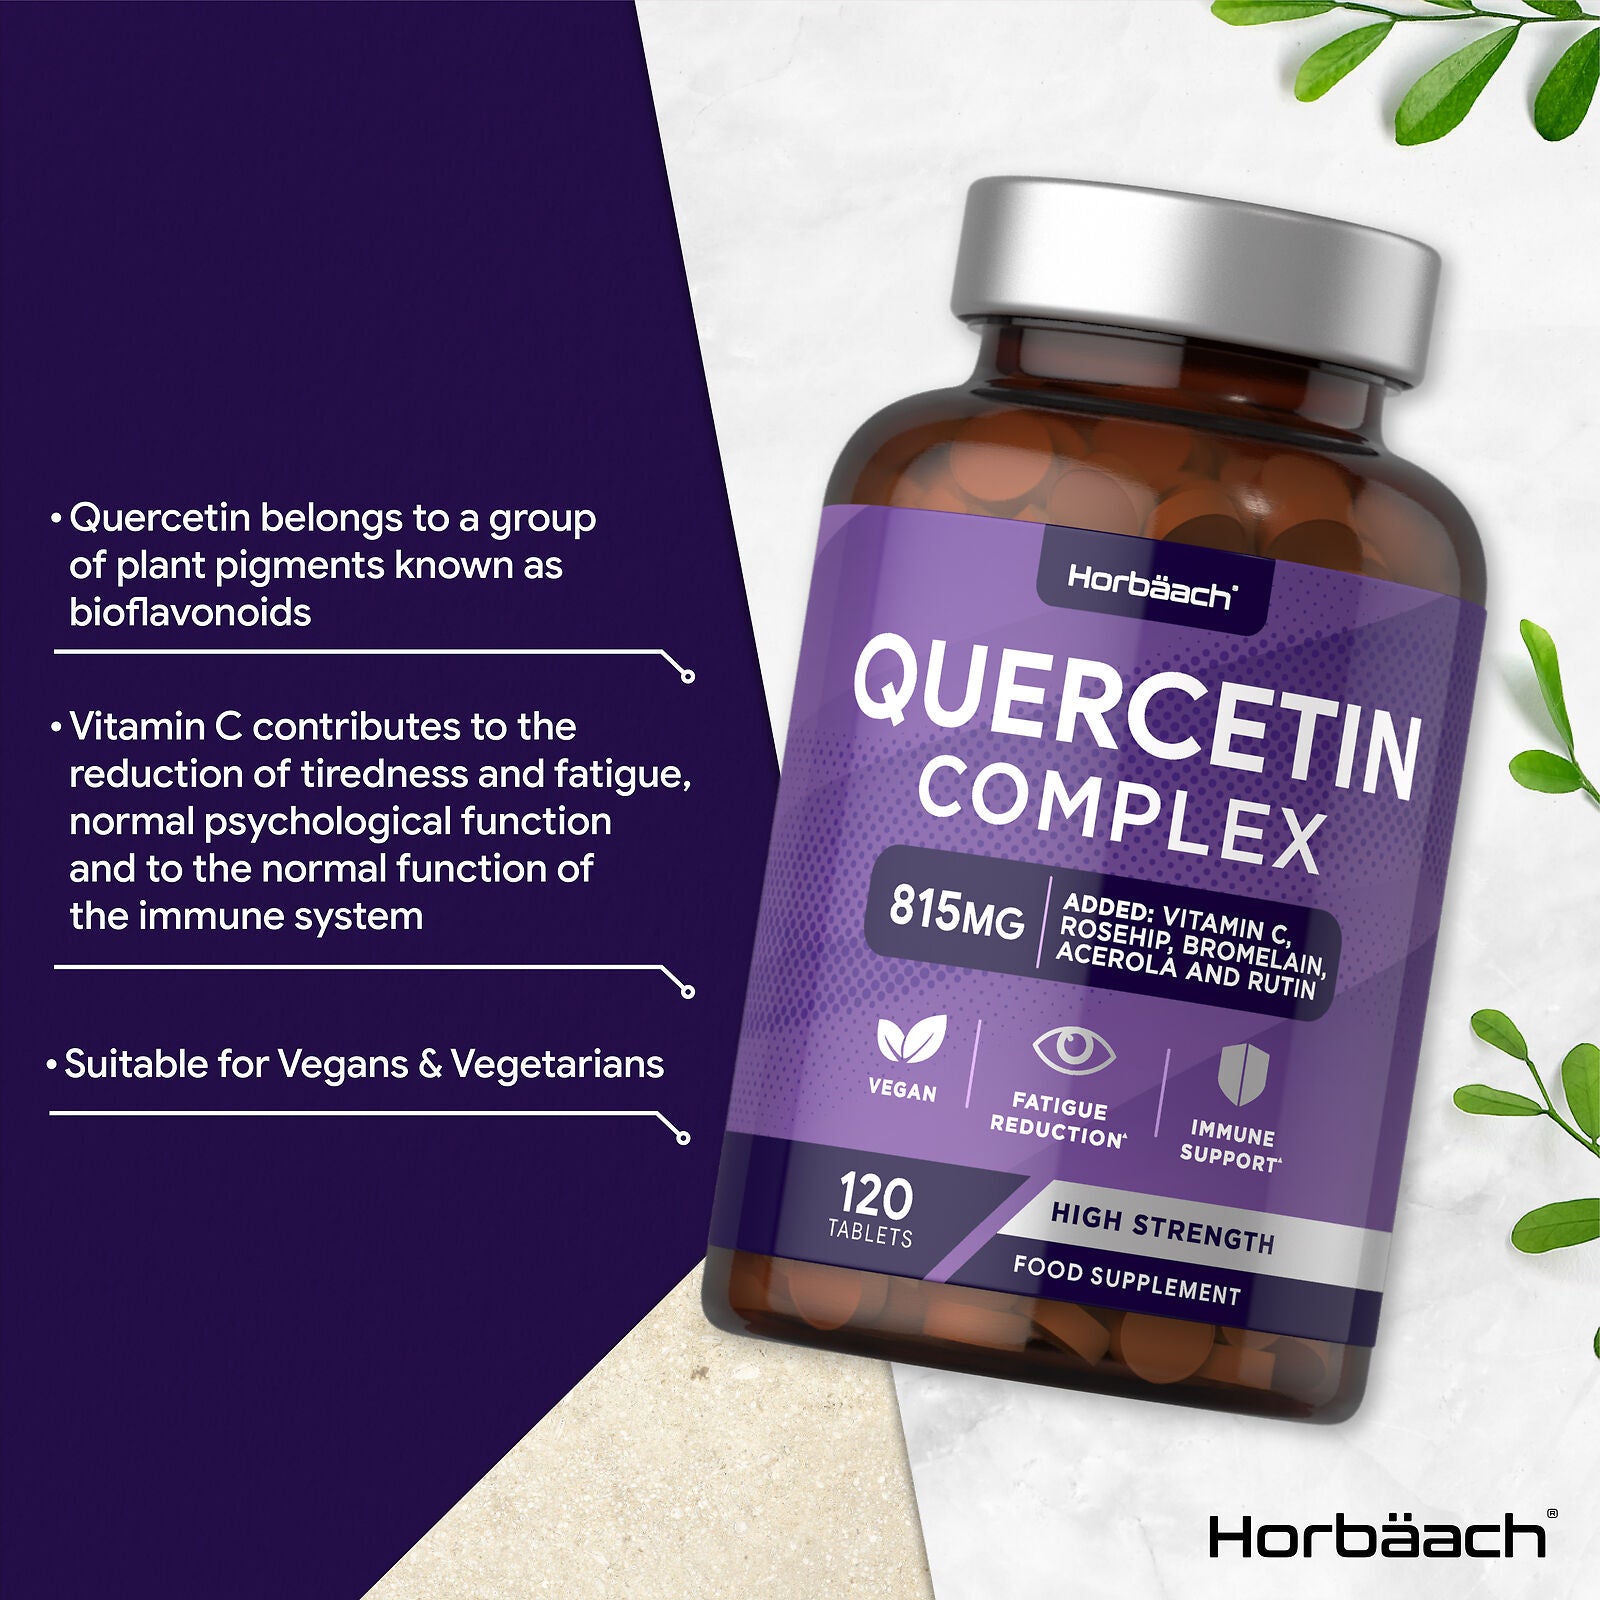 Quercetin Complex 815 mg | 120 Tablets